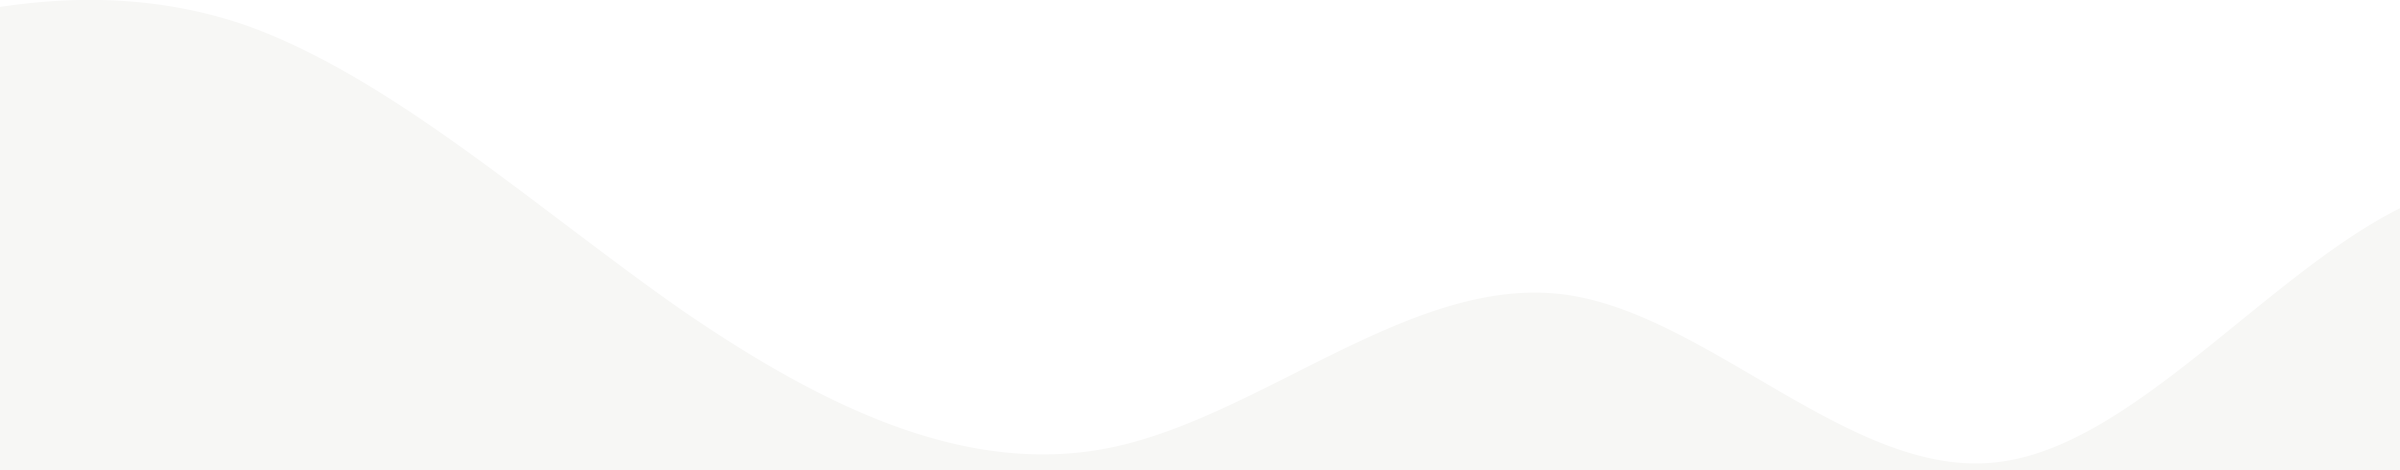 images/Wave_White_bottom_left_shape_01.png